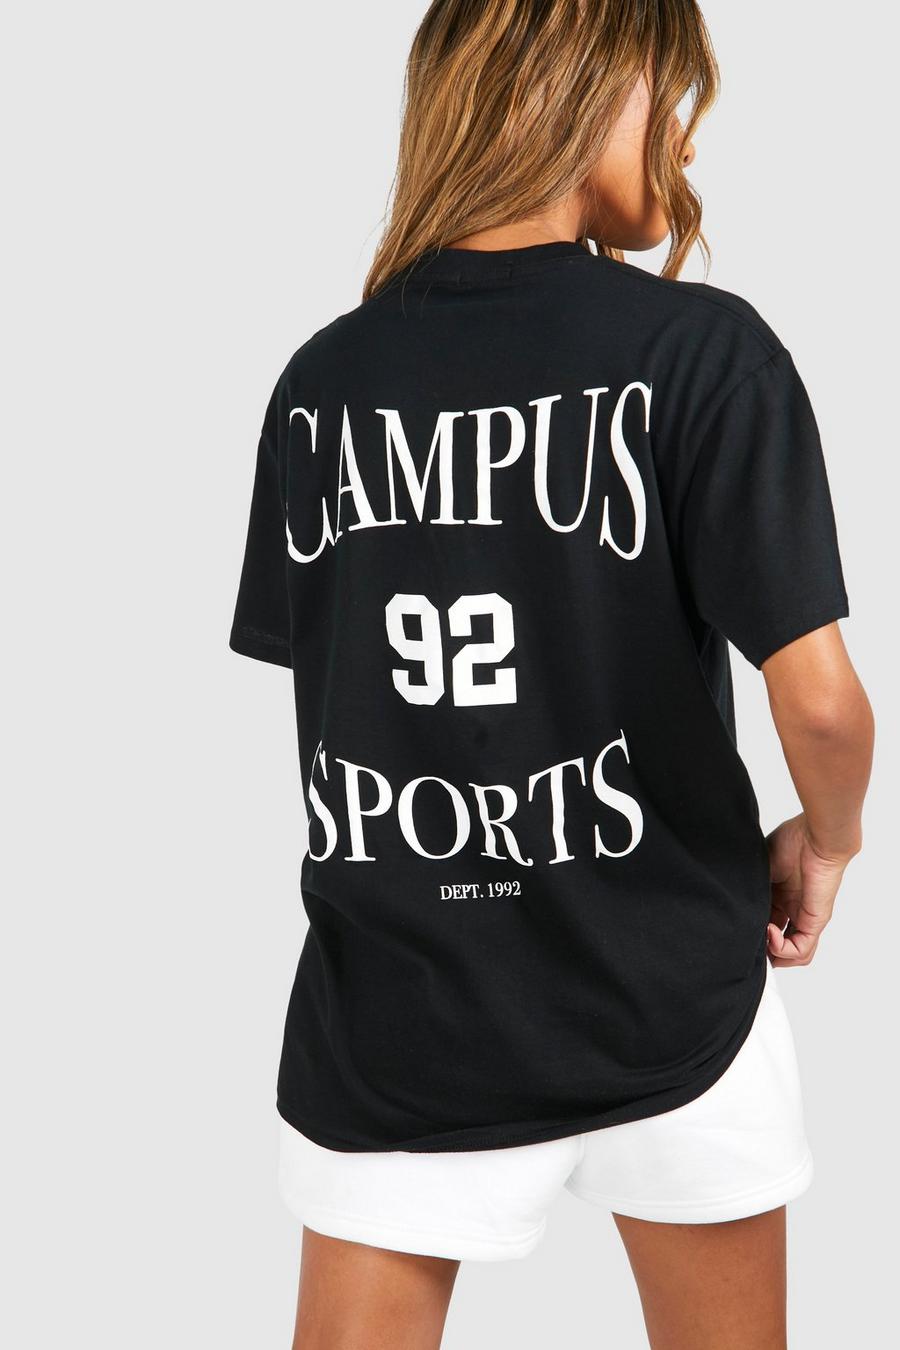 Oversize Baumwoll T-Shirt mit Campus Sports Print hinten, Black